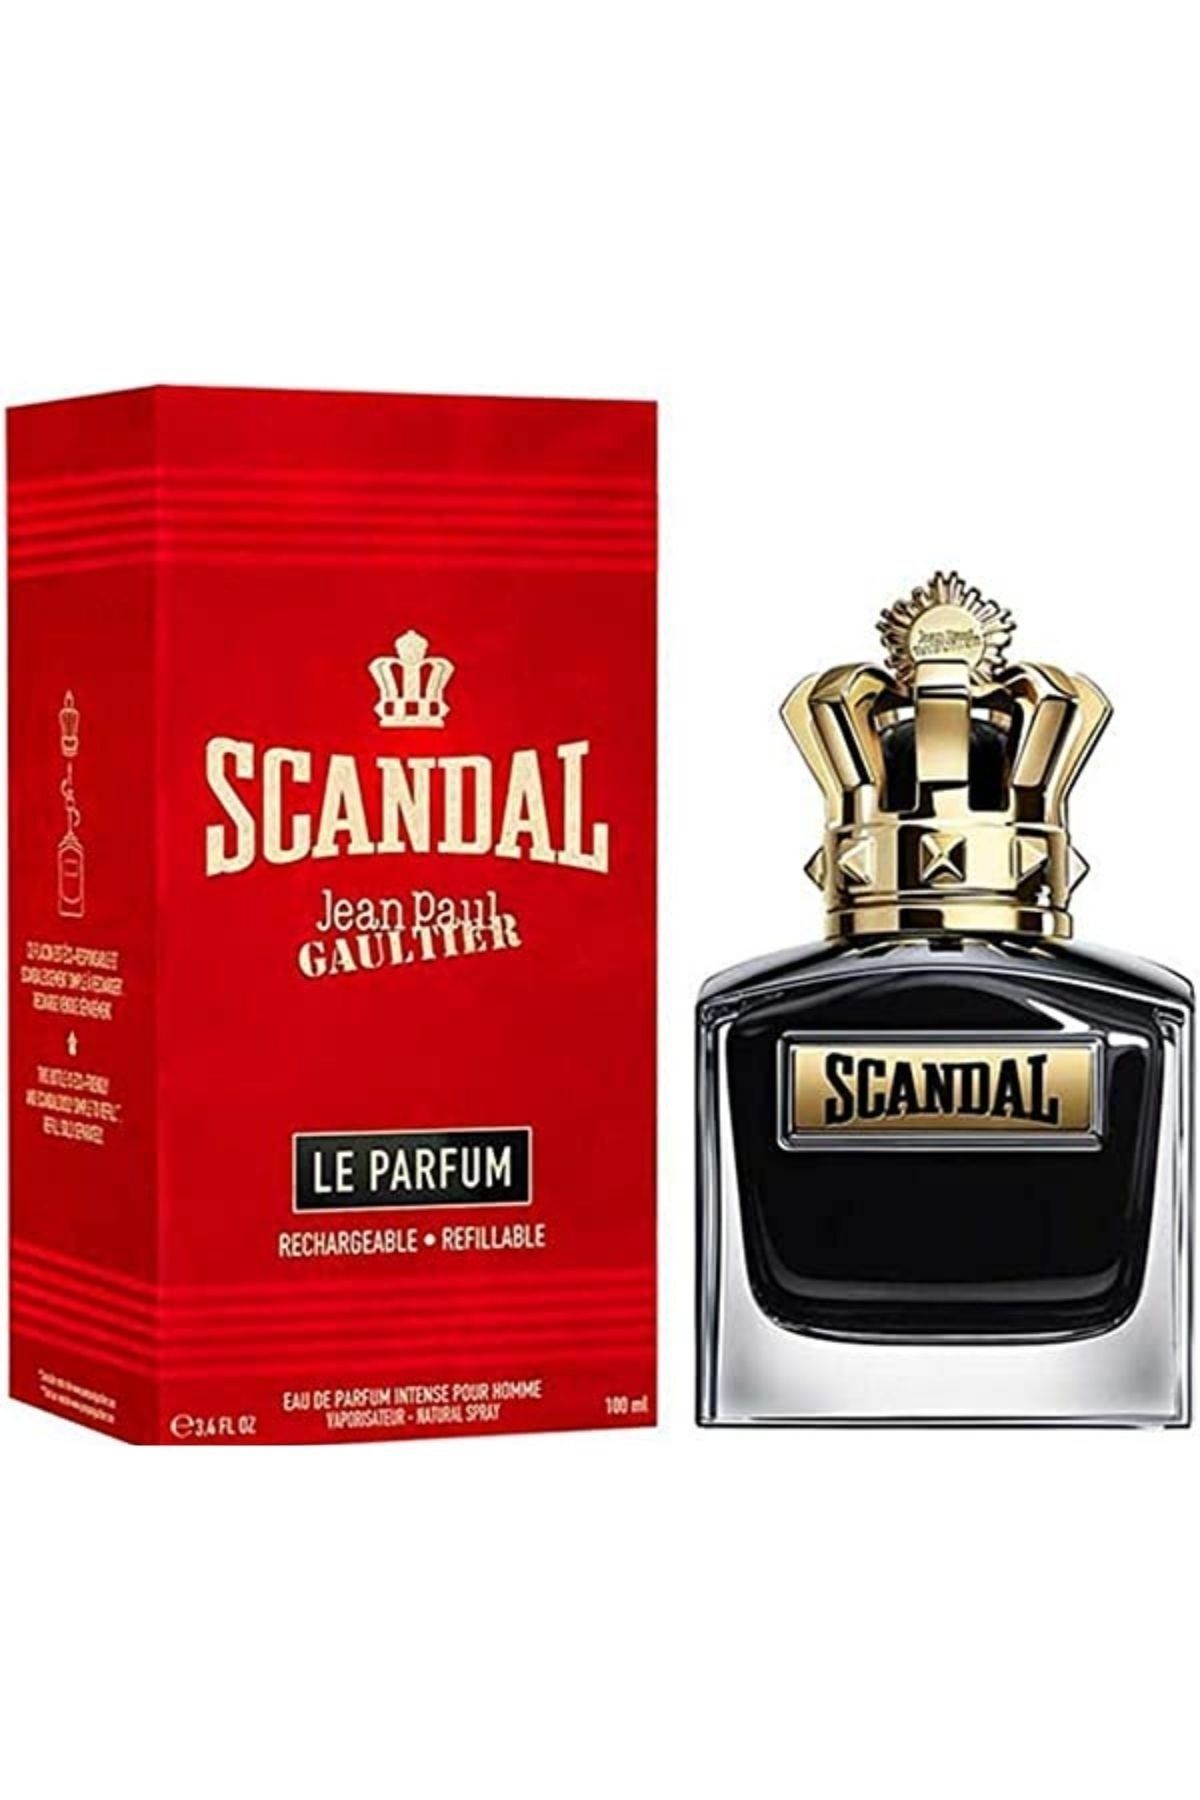 Scandal pour homme parfum. Gaultier Парфюм. Скандал духи мужские.